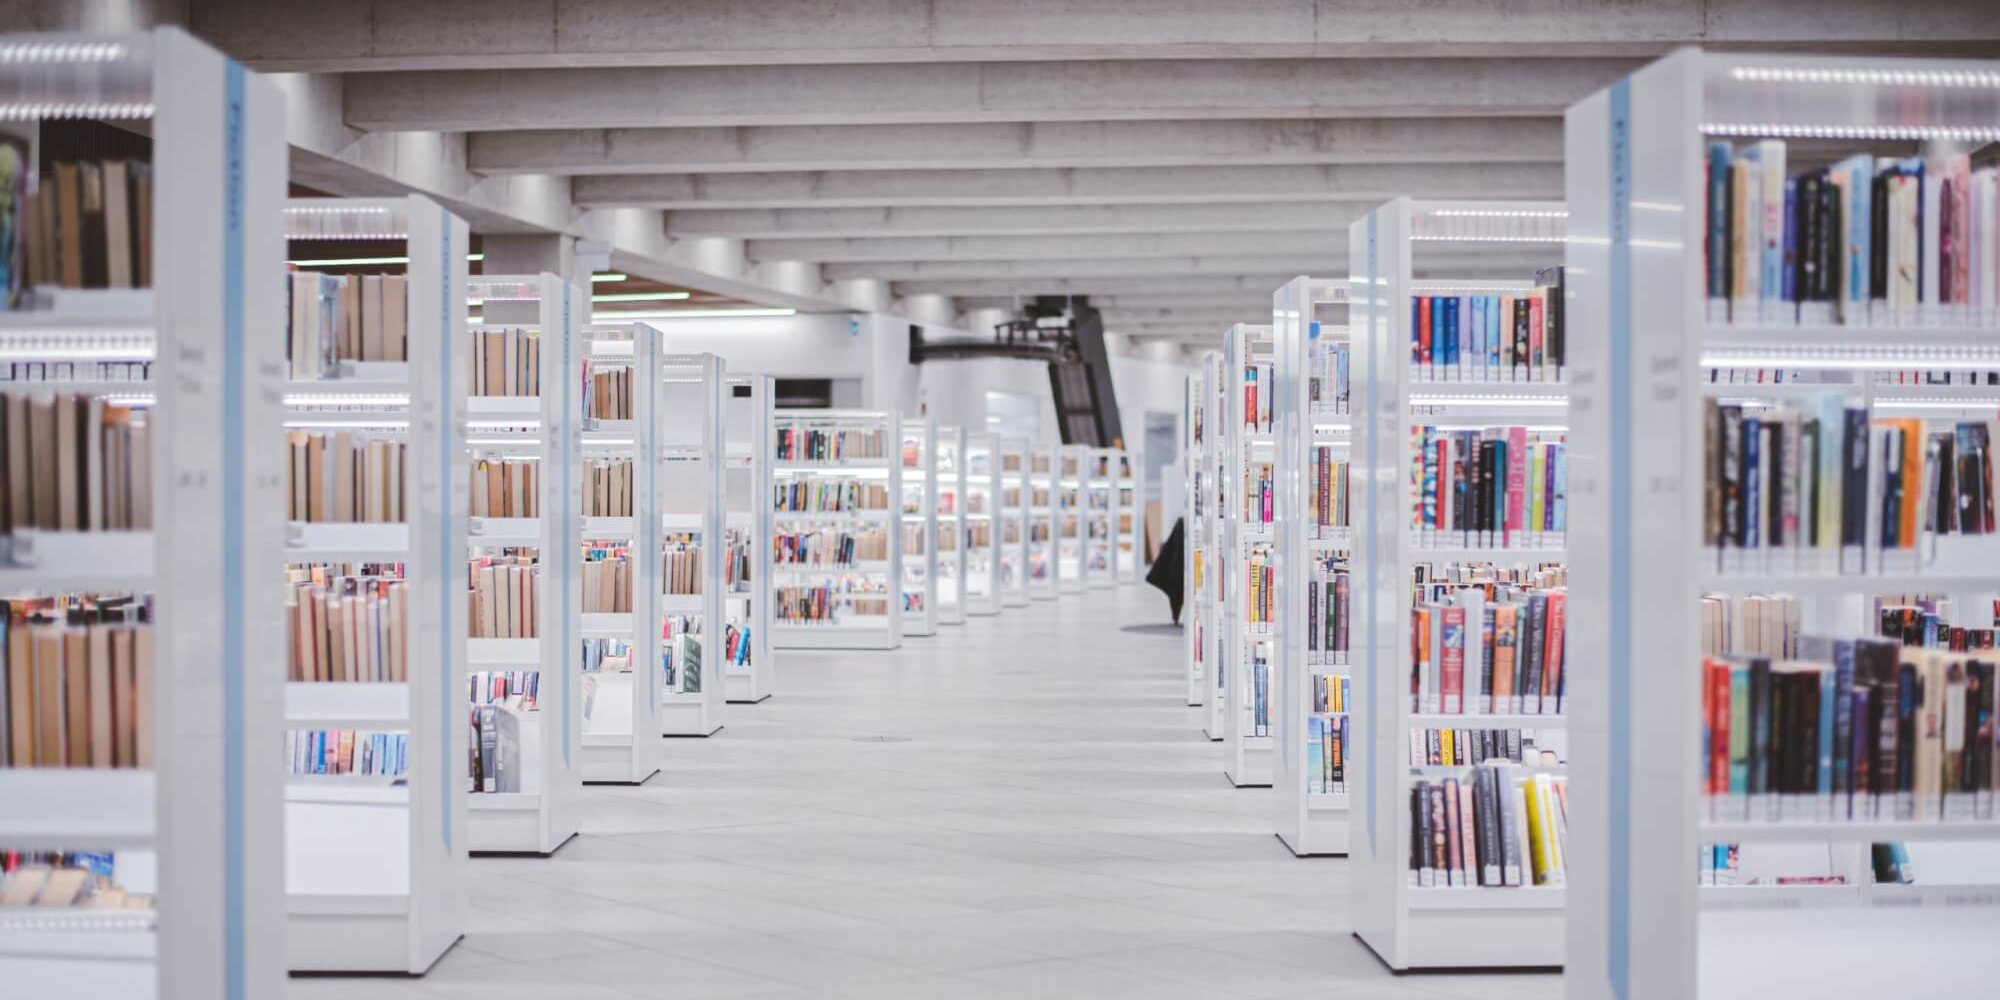 Ansicht eines Ganges in einer Bibliothek mit verschiedenen Regalen voller Bücher.